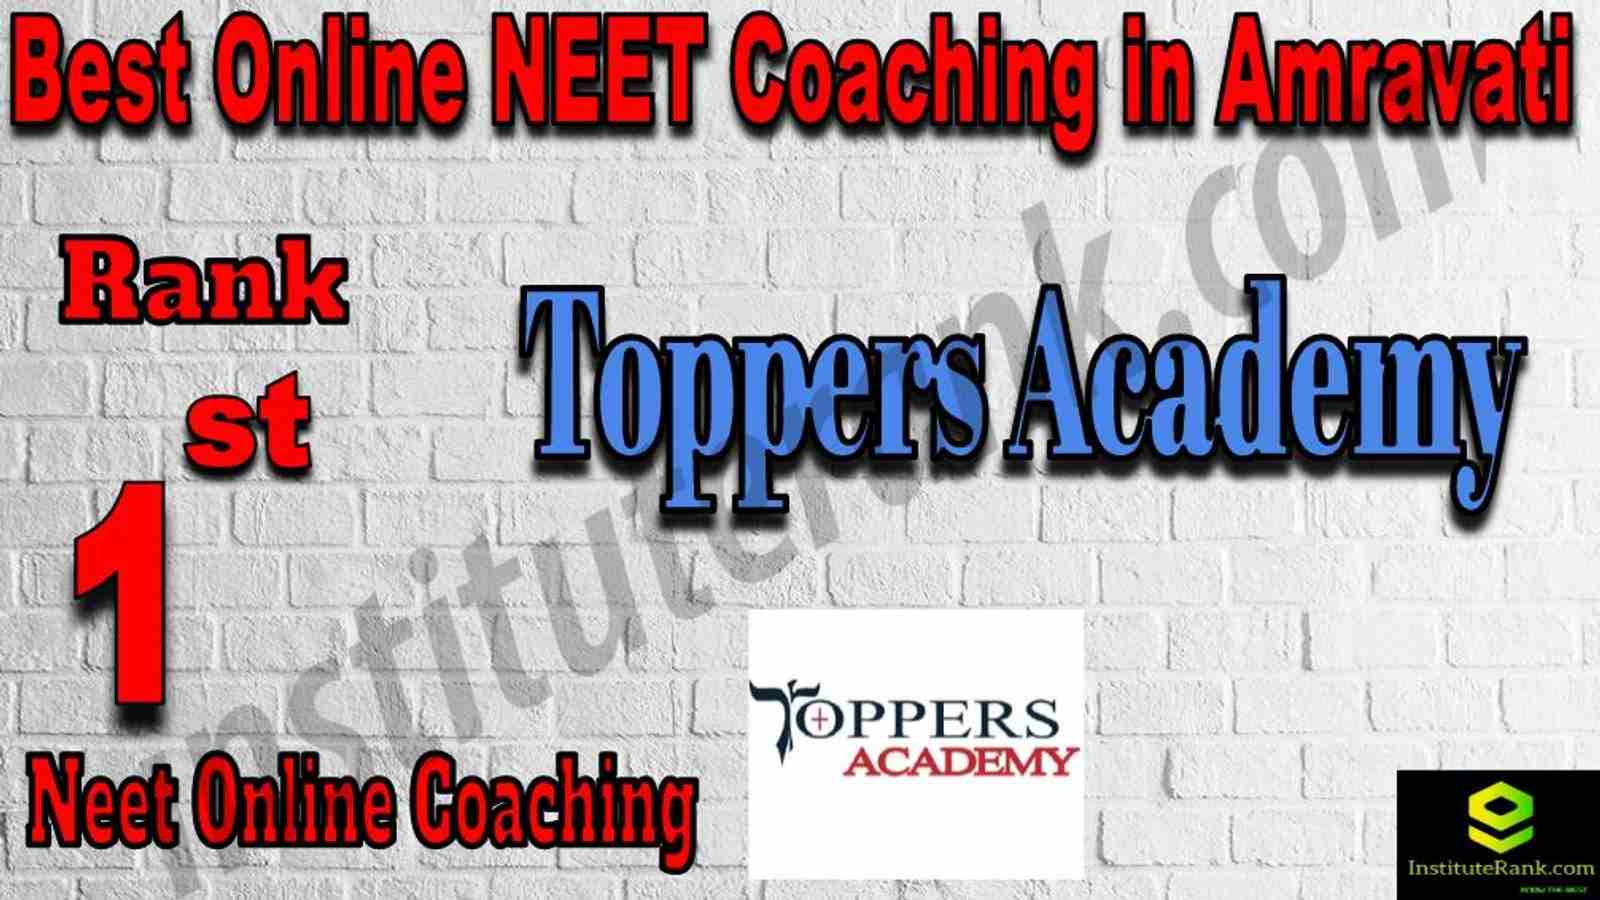 1st Best Online Neet Coaching in Amravati